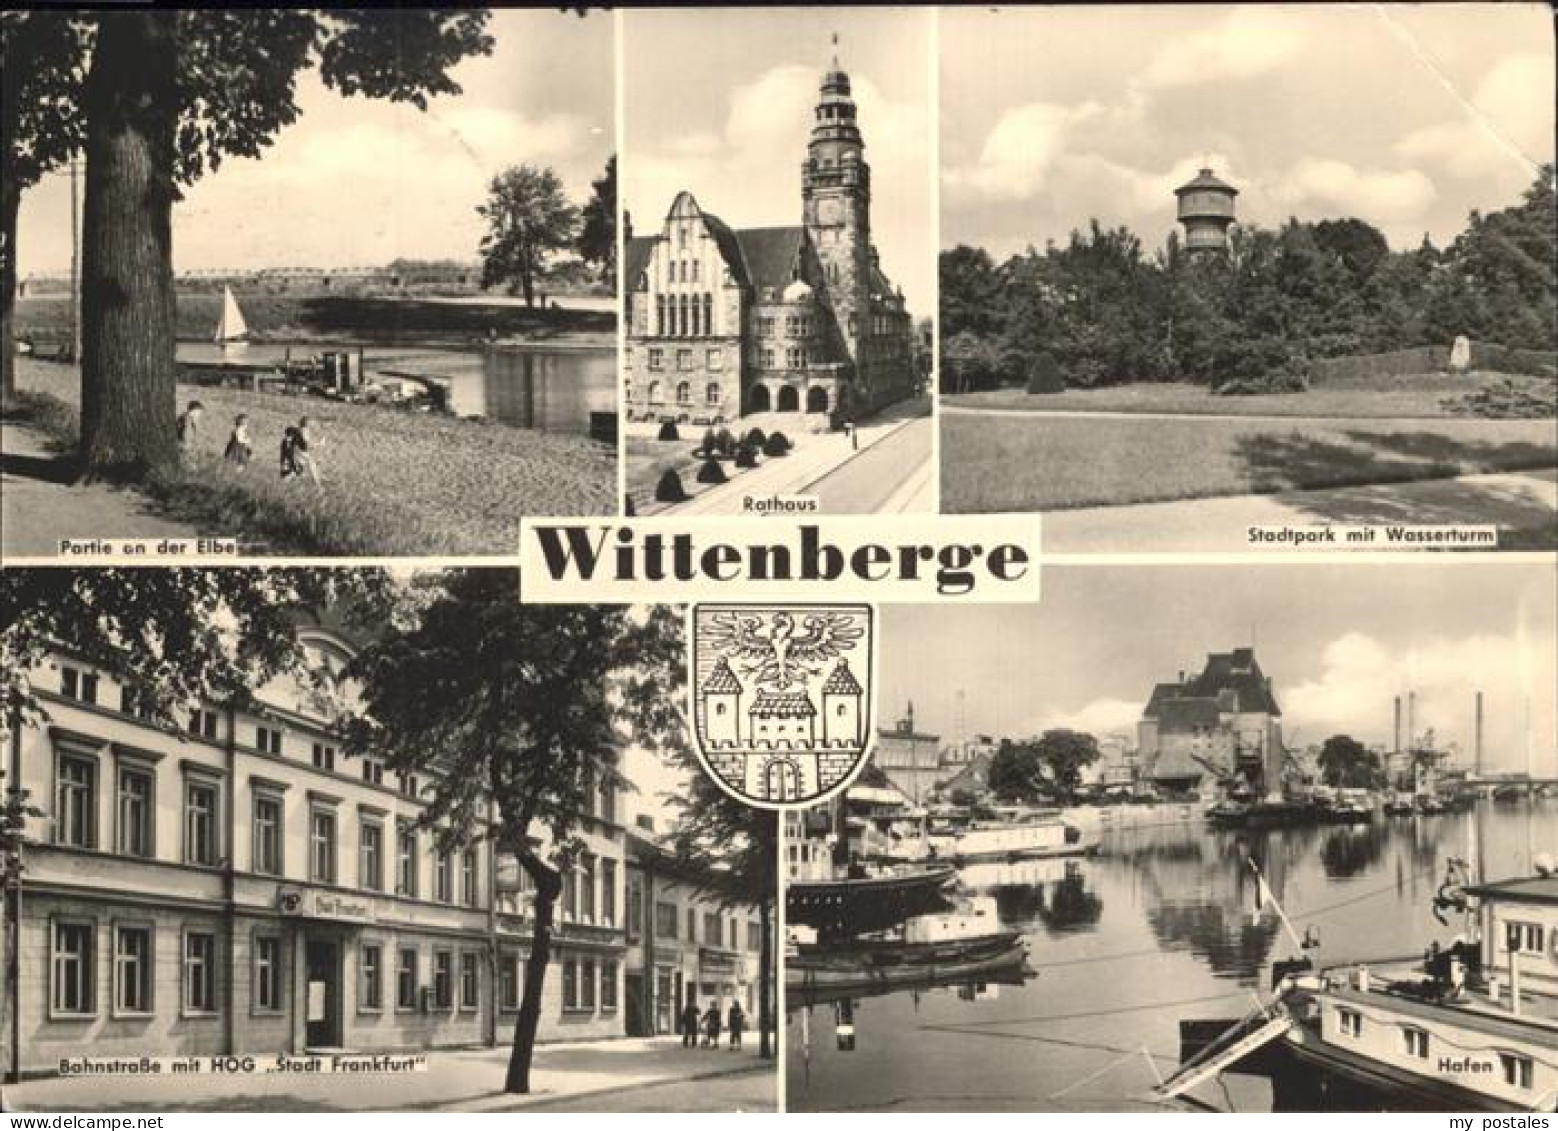 41262000 Wittenberge Wappen Rathaus Stadtpark Wasserturm HOG Stadt Frankfurt Elb - Wittenberge